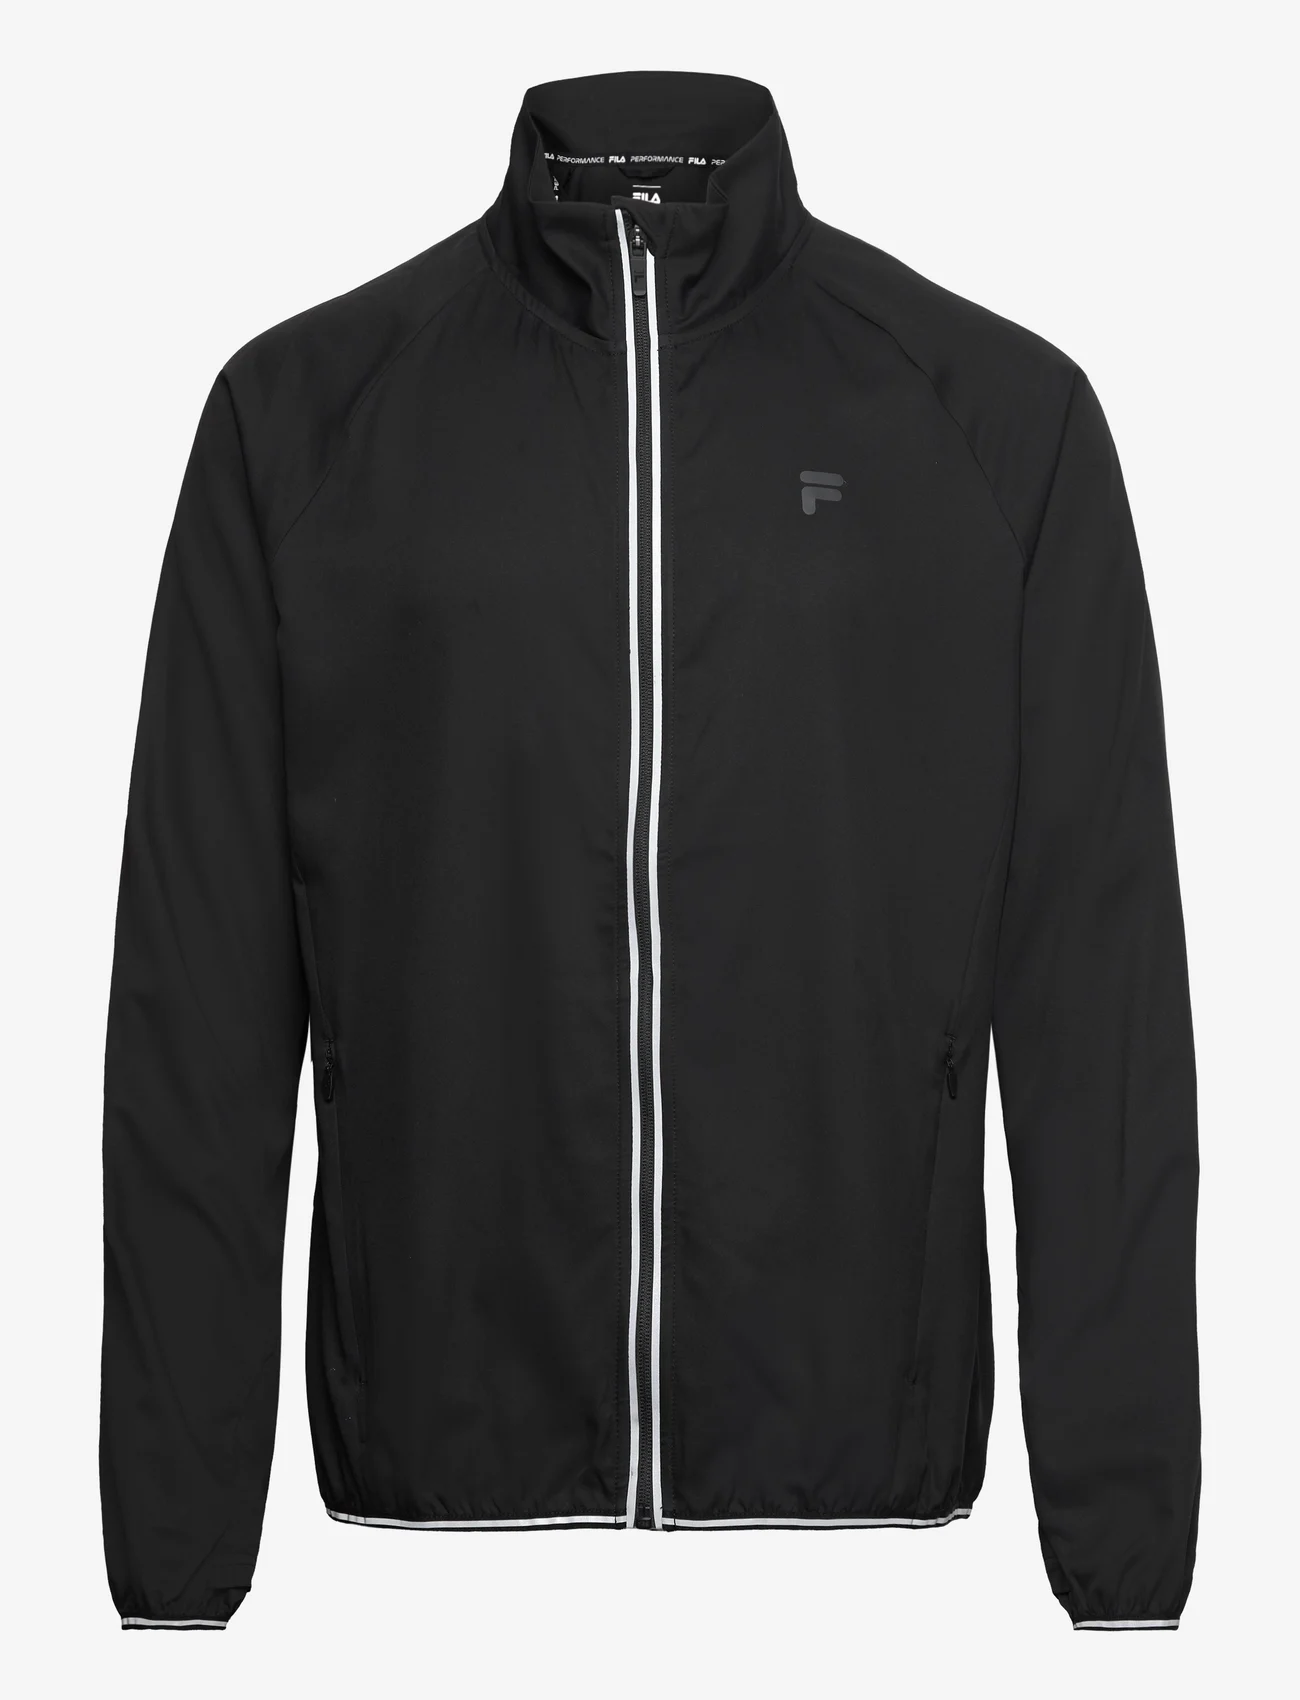 FILA - ROCROI running jacket - sportjacken - black - 0